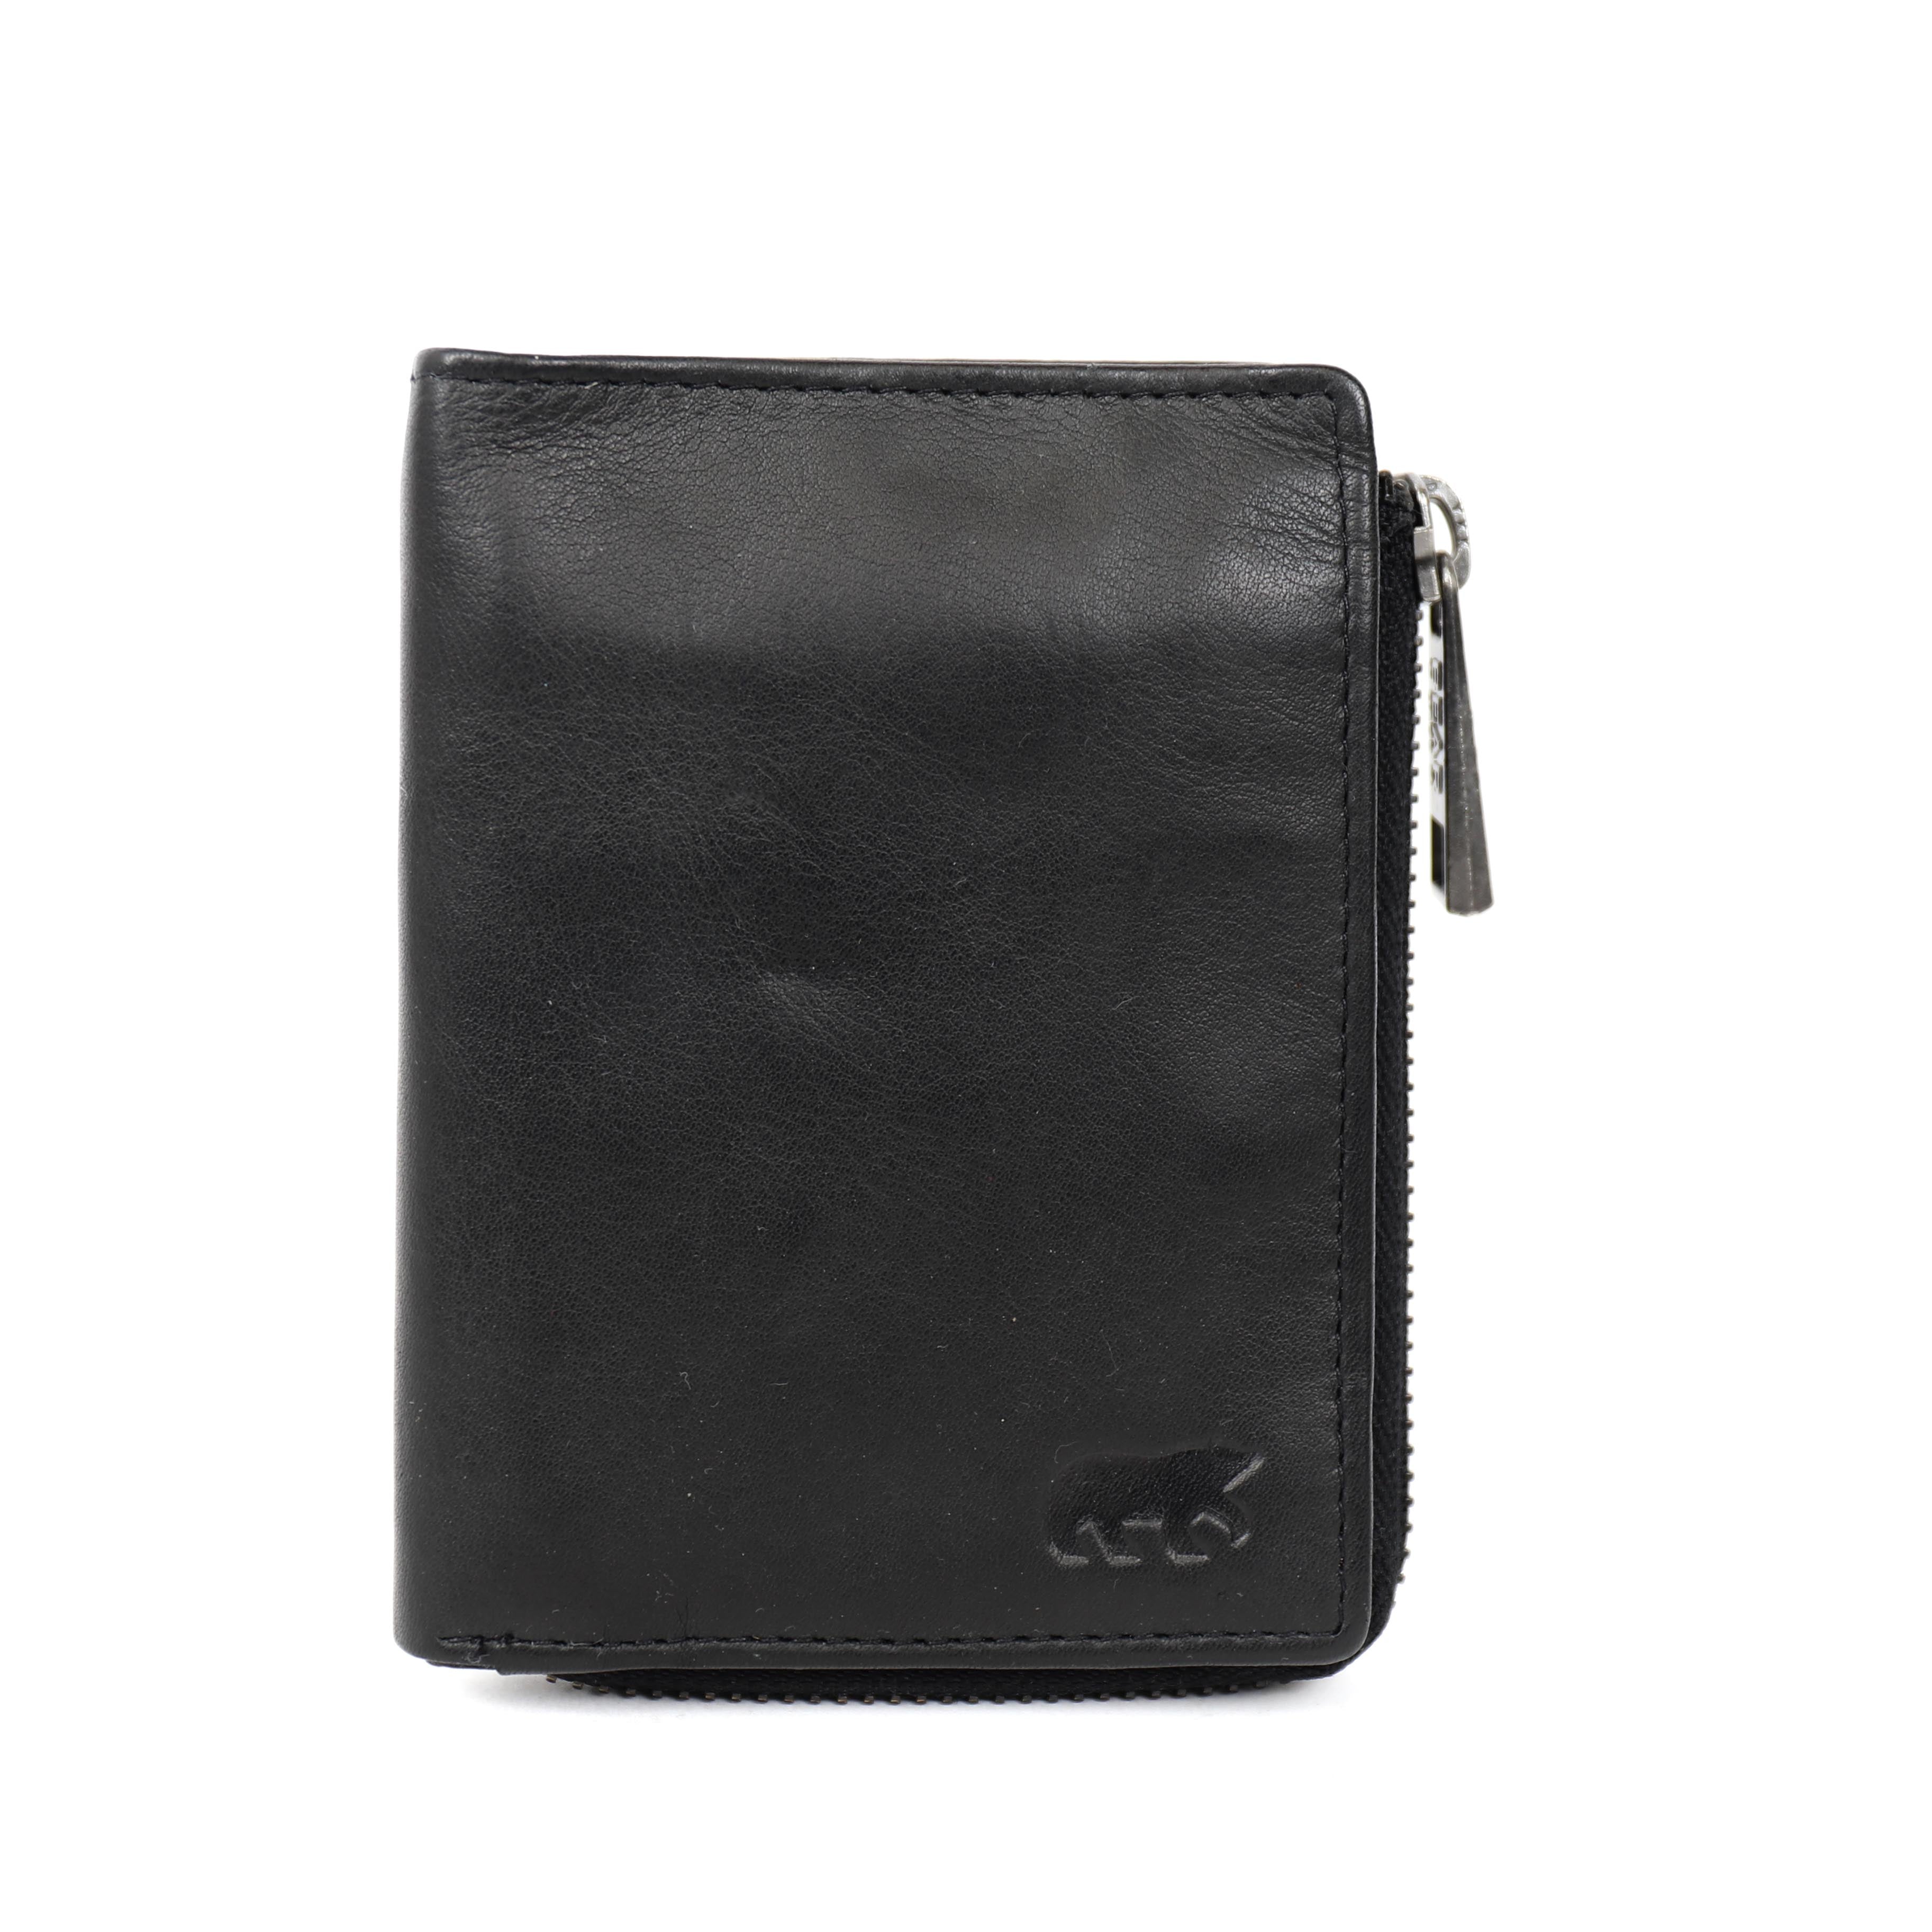 Zipper wallet 'Gungun' black